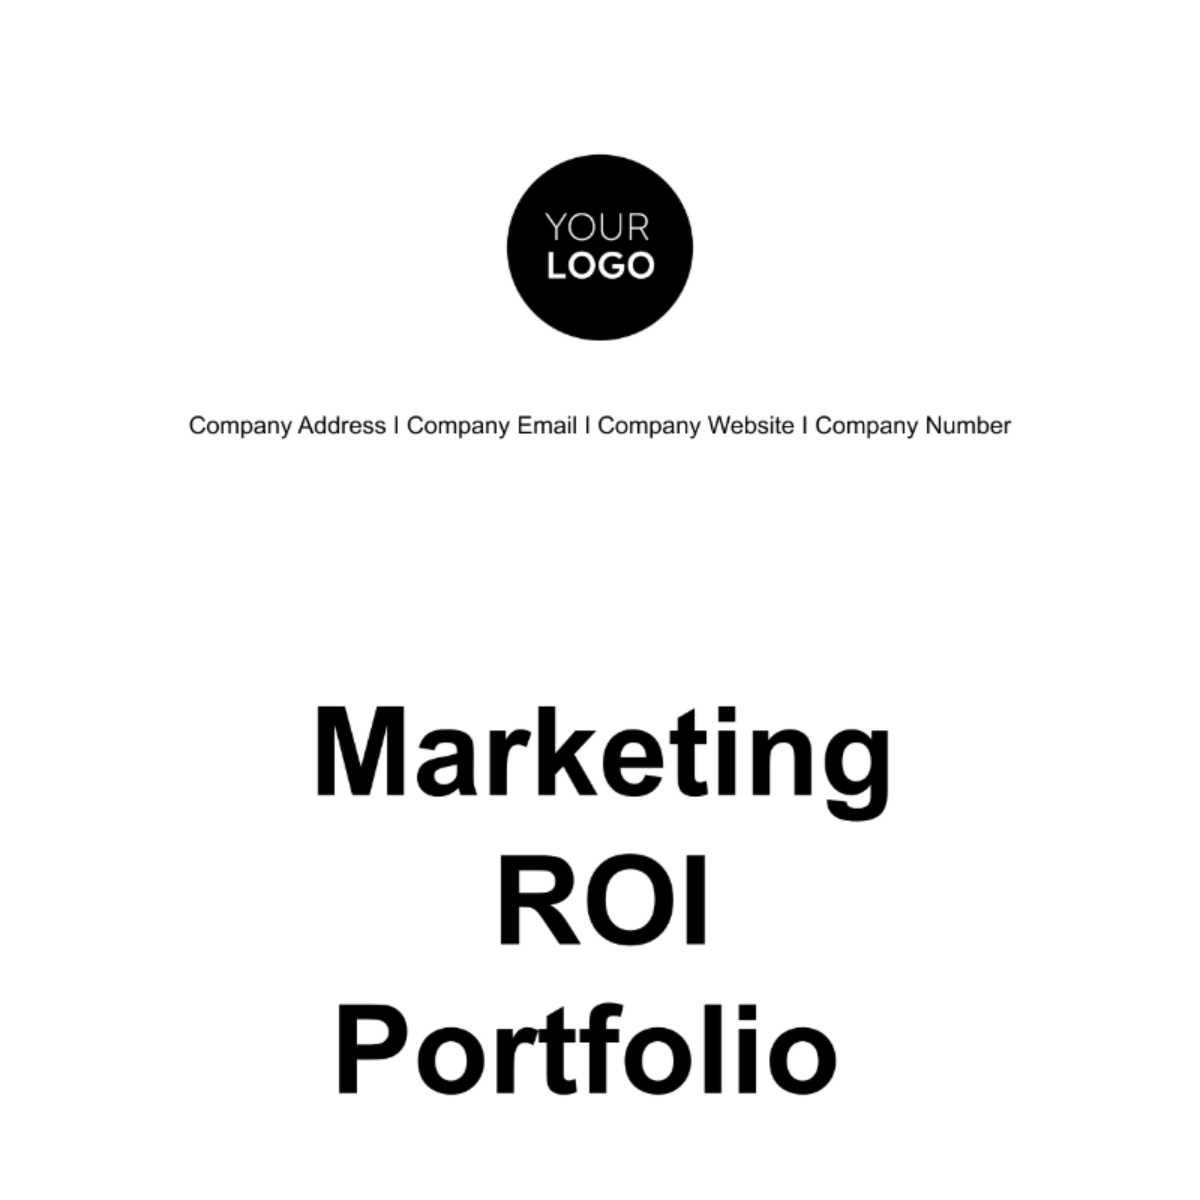 Free Marketing ROI Portfolio Template